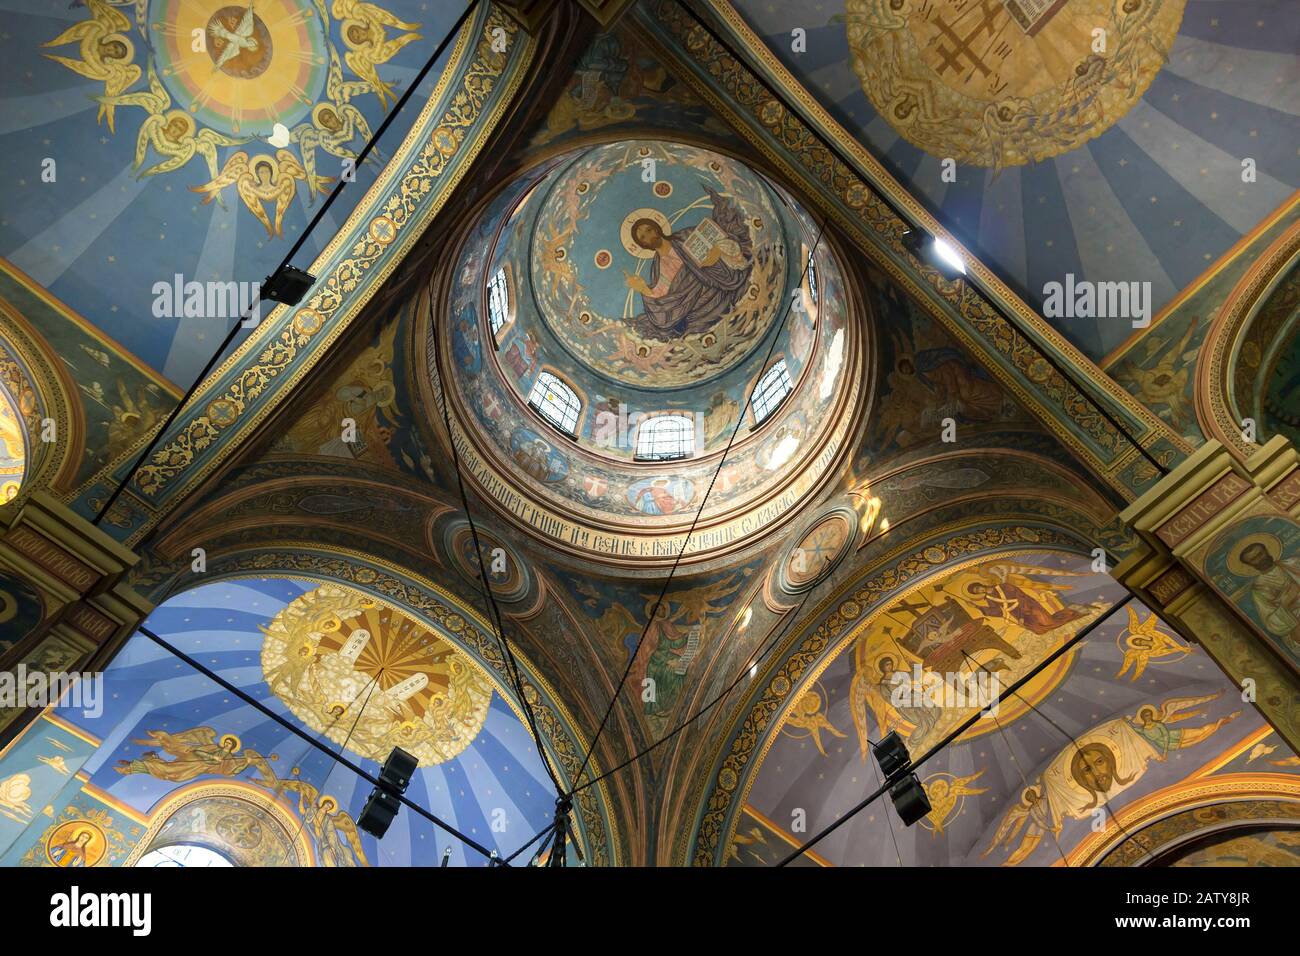 Das Innere der Kathedrale wurde der Mutter Gottes gewidmet - der orthodoxen Kirche in Warna. Stadt am Schwarzen Meer. Bulgarien. Stockfoto